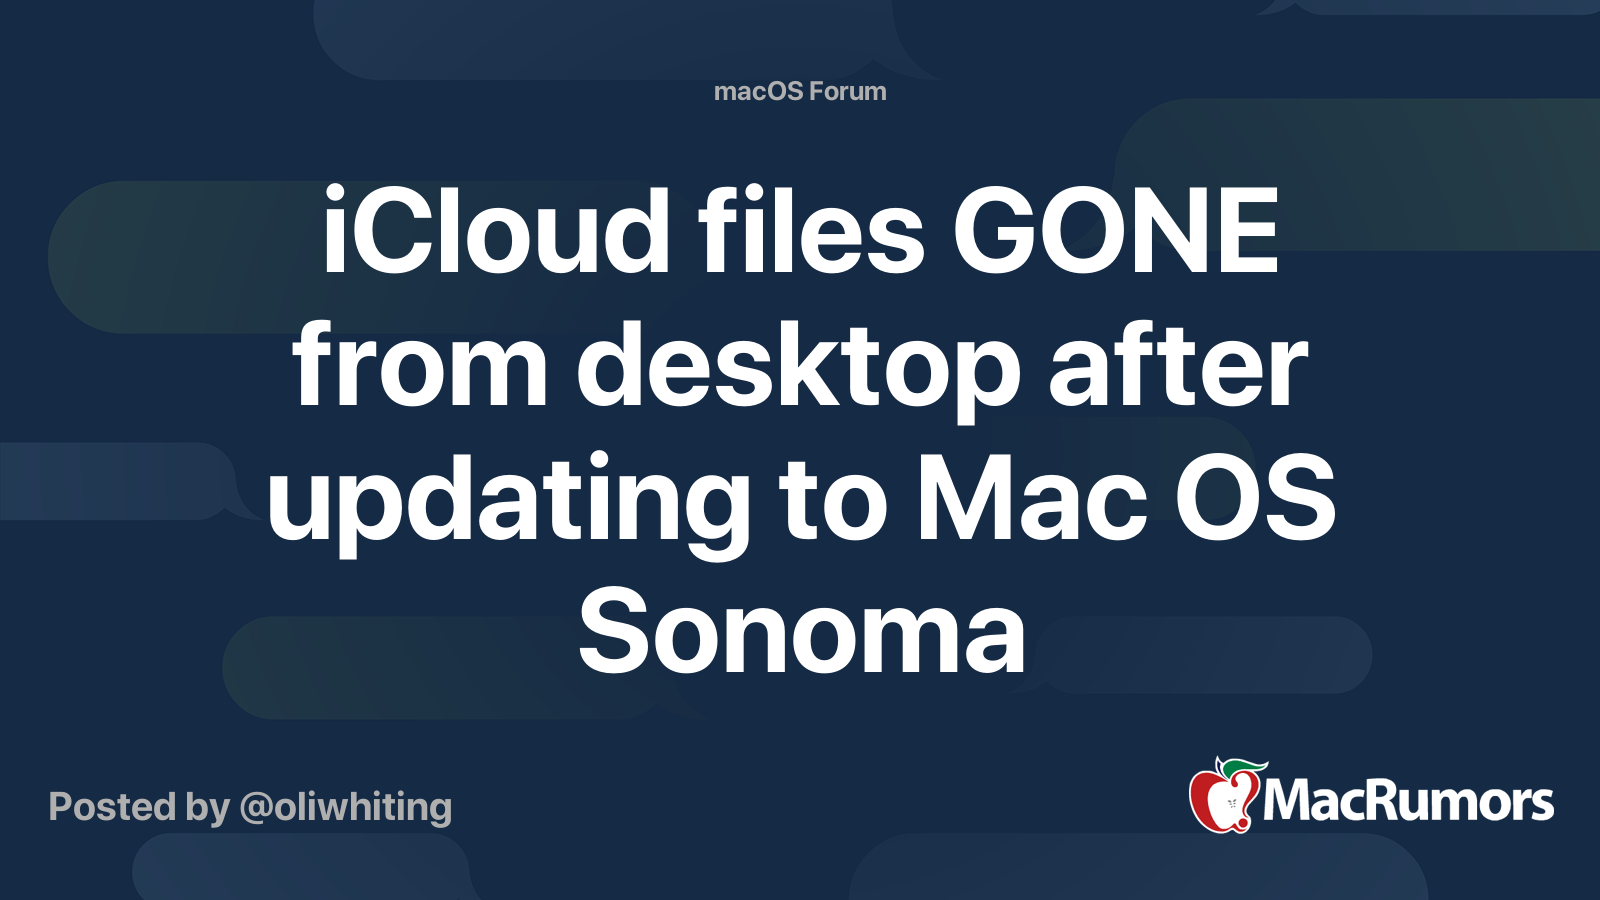 Les fichiers iCloud GONE du bureau après la mise à jour vers Mac OS Sonoma